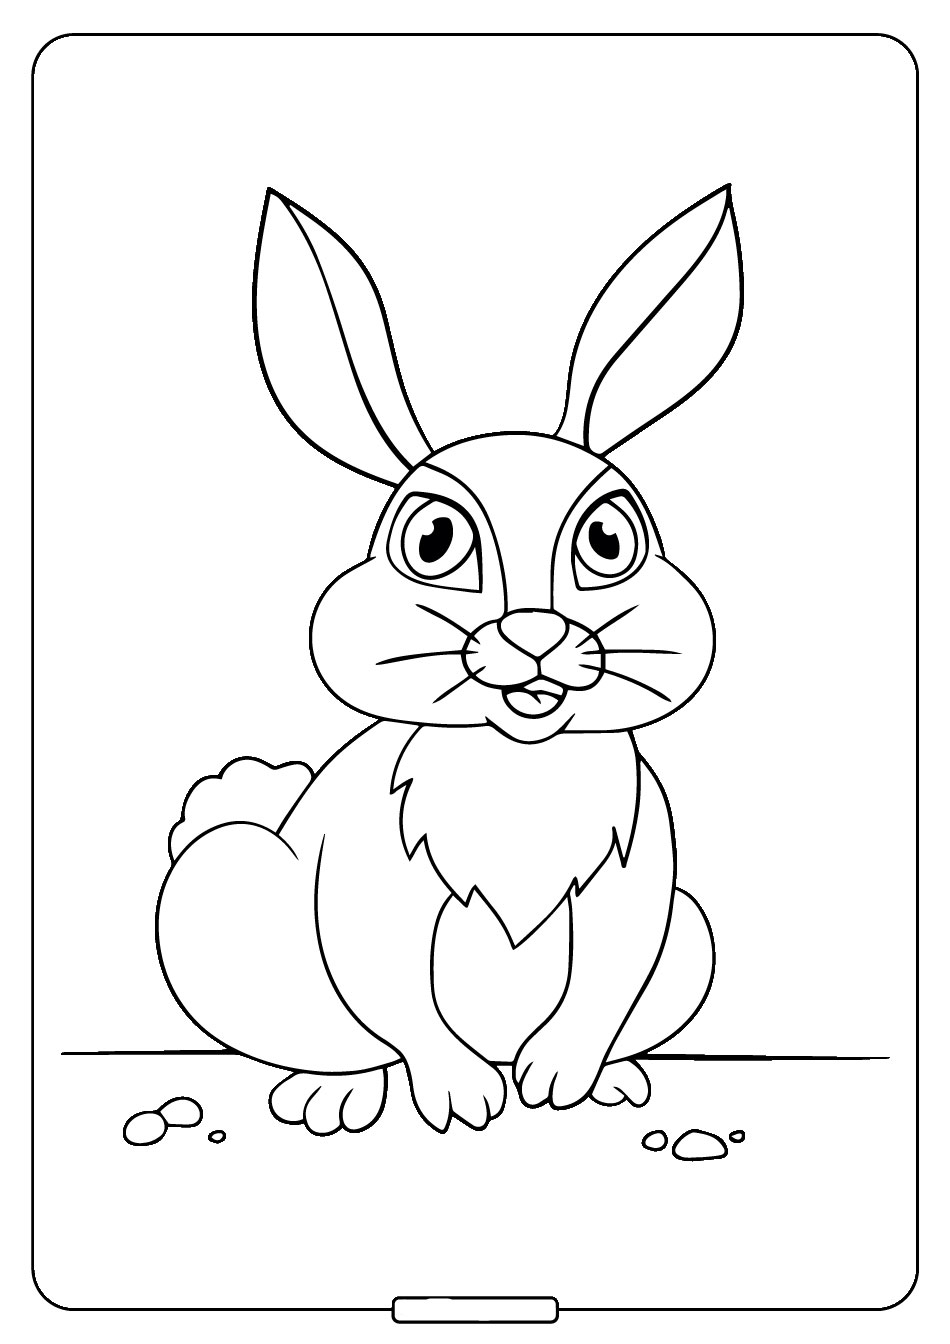 Hướng dẫn cách vẽ CON THỎ, Tô màu CON THỎ - How to draw a Bunny Rabbit -  YouTube